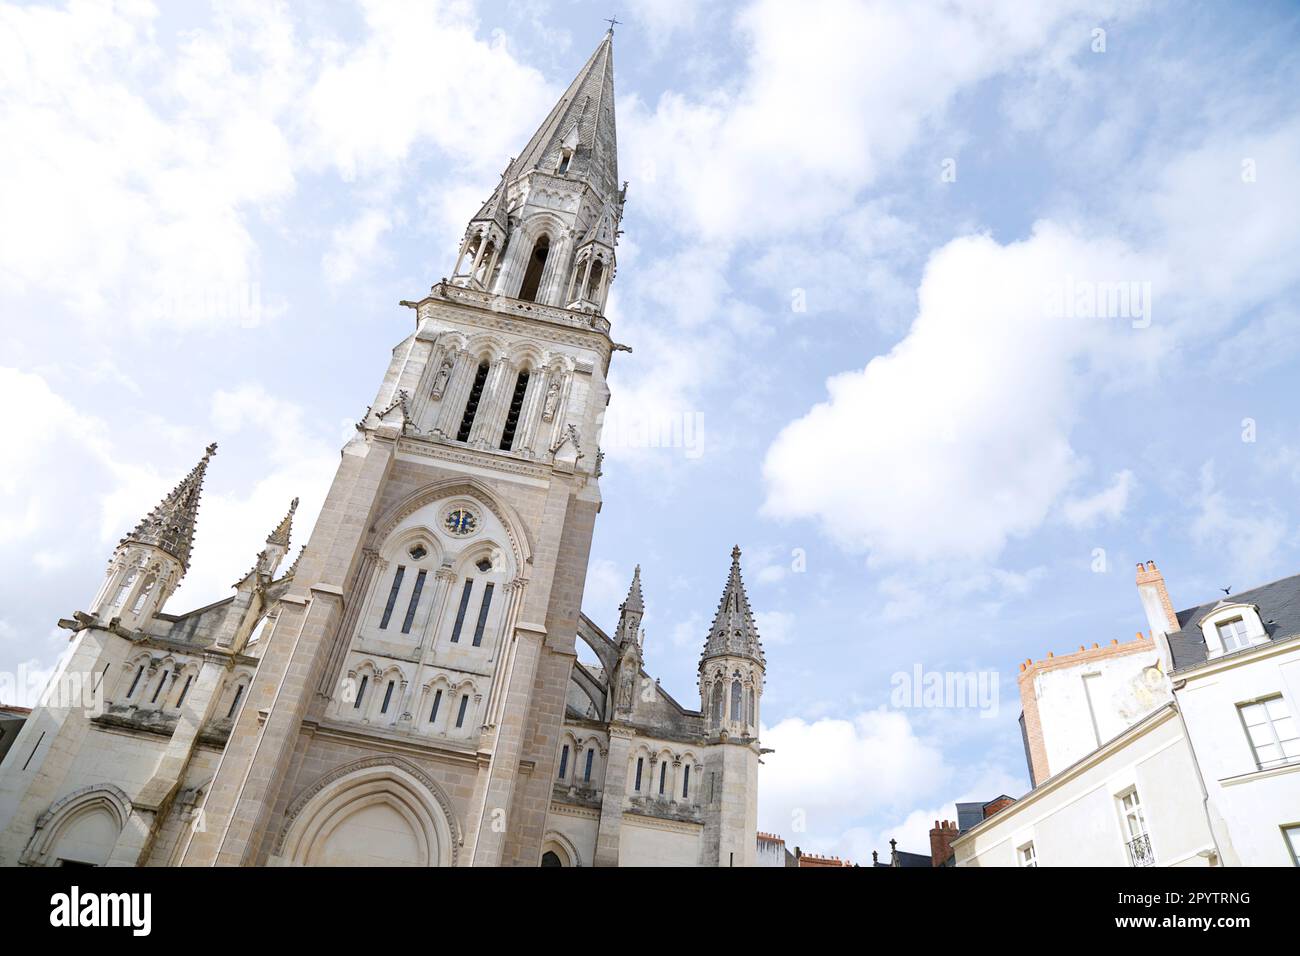 Basílica de San Nicolás de Nantes es una iglesia neogótica situada en el centro de la ciudad de Nantes en Francia Foto de stock